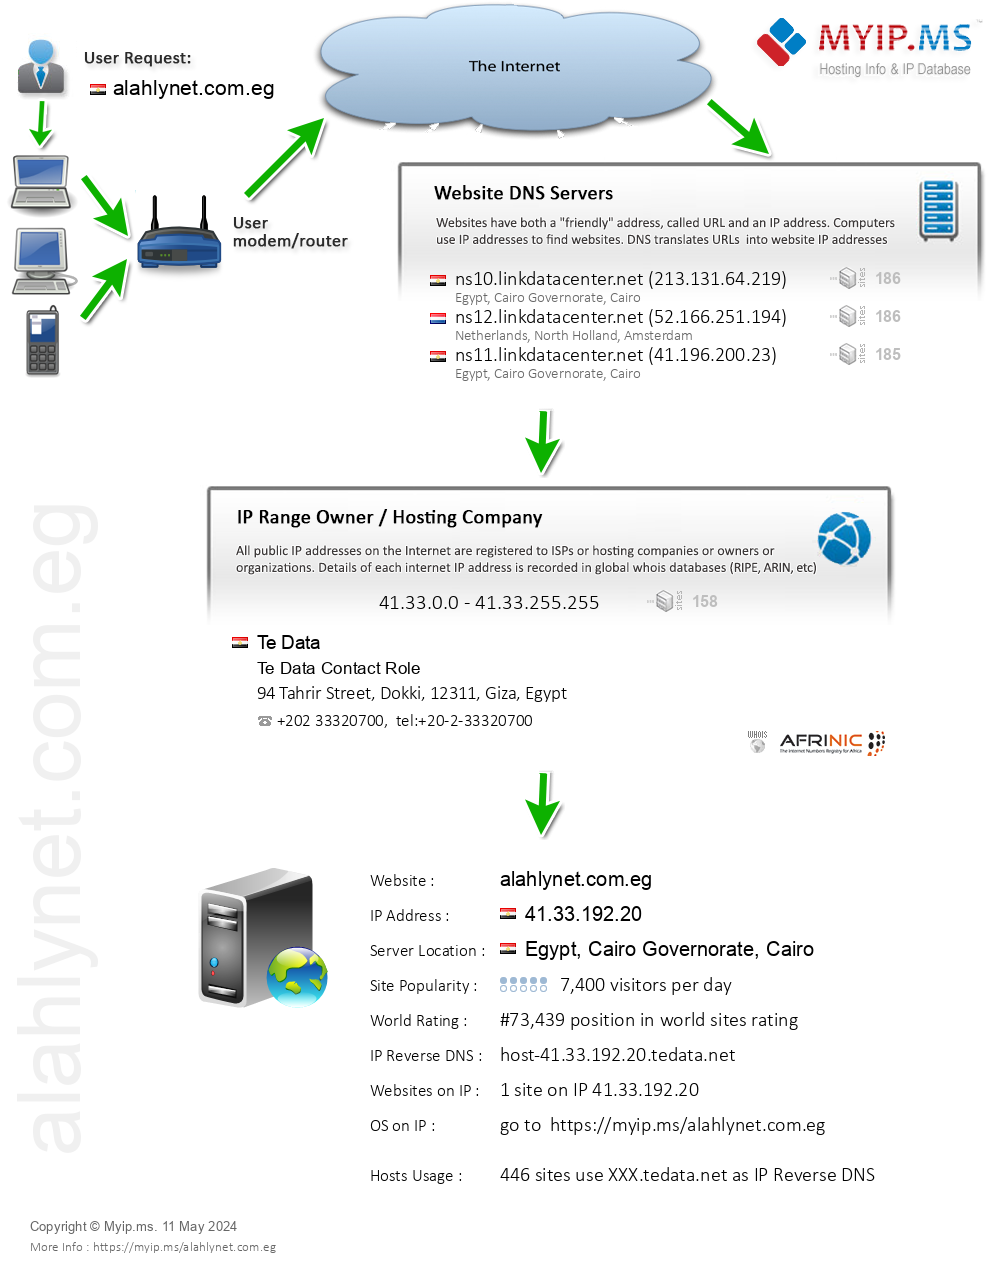 Alahlynet.com.eg - Website Hosting Visual IP Diagram